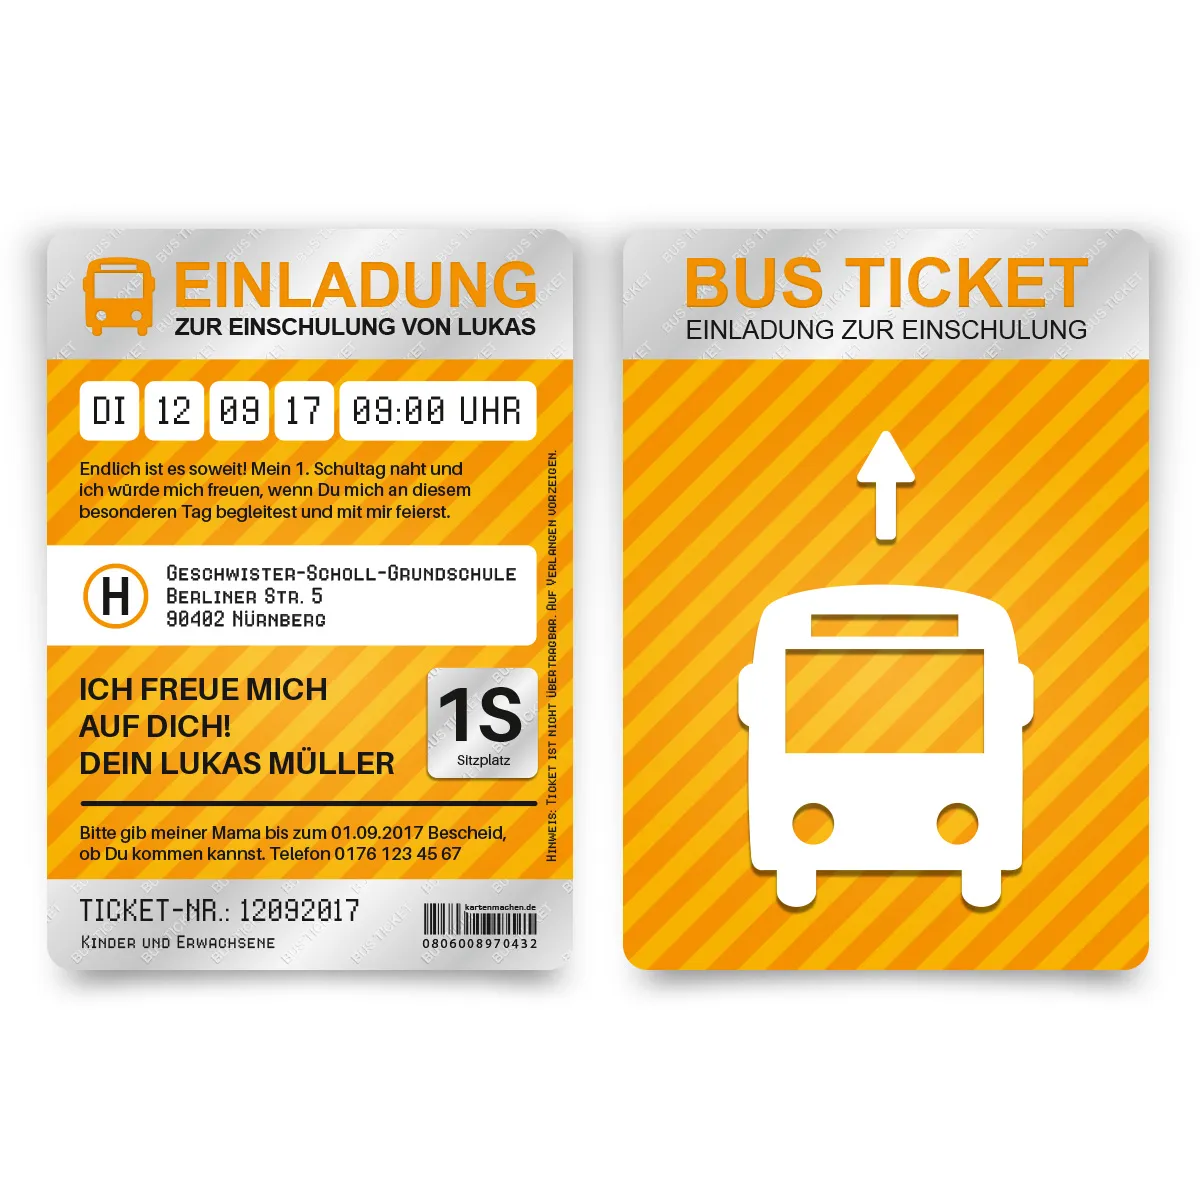 Einladung zur Einschulung - Bus Ticket